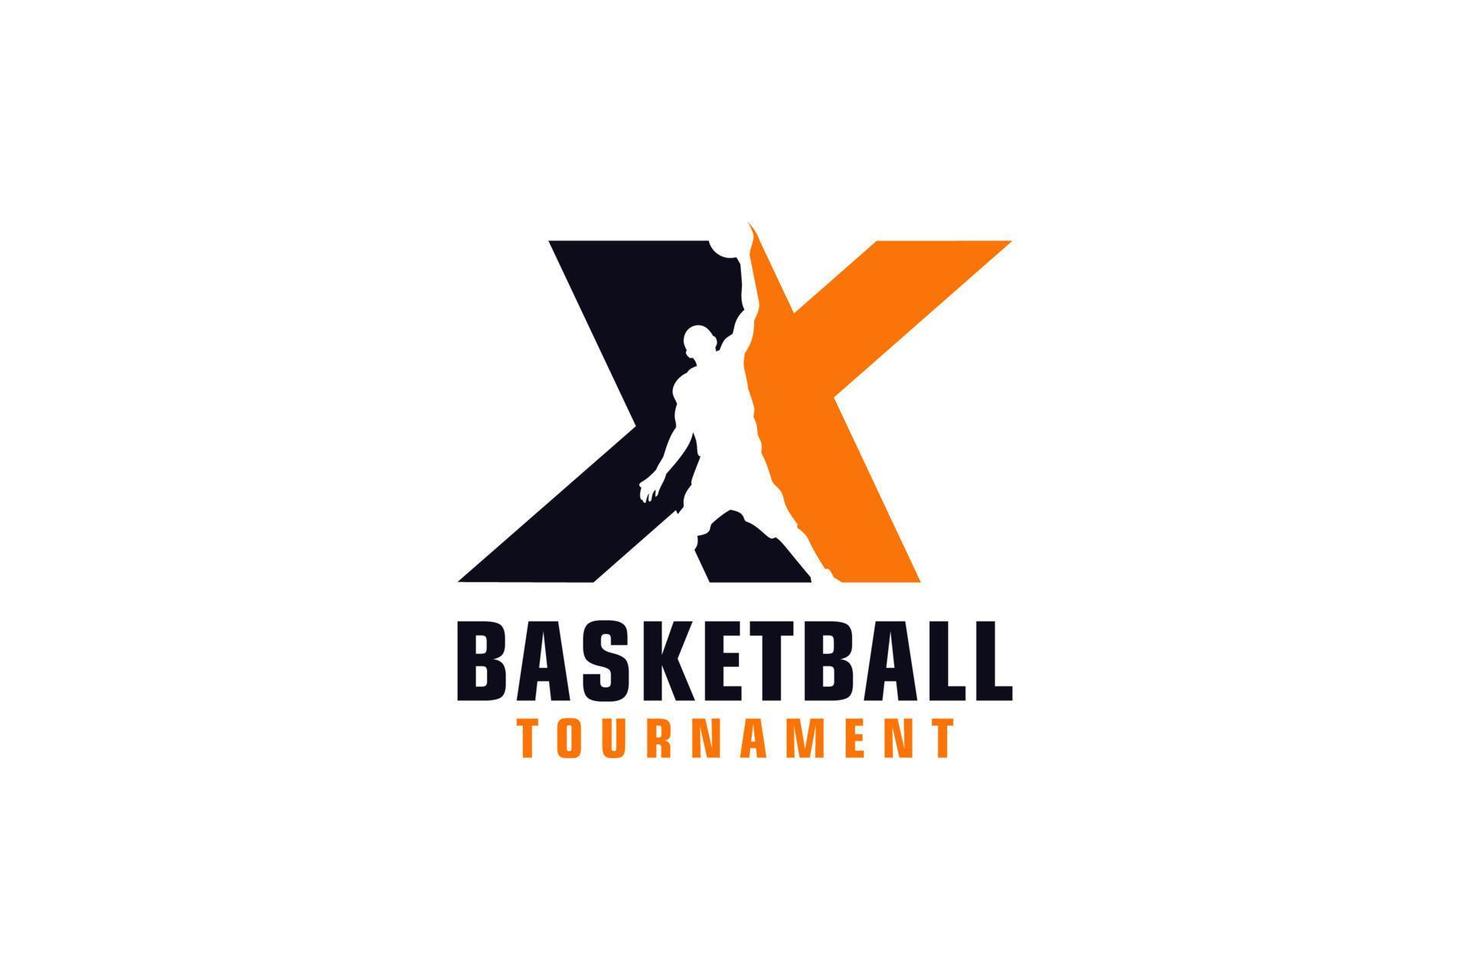 letra x con diseño de logotipo de baloncesto. elementos de plantilla de diseño vectorial para equipo deportivo o identidad corporativa. vector